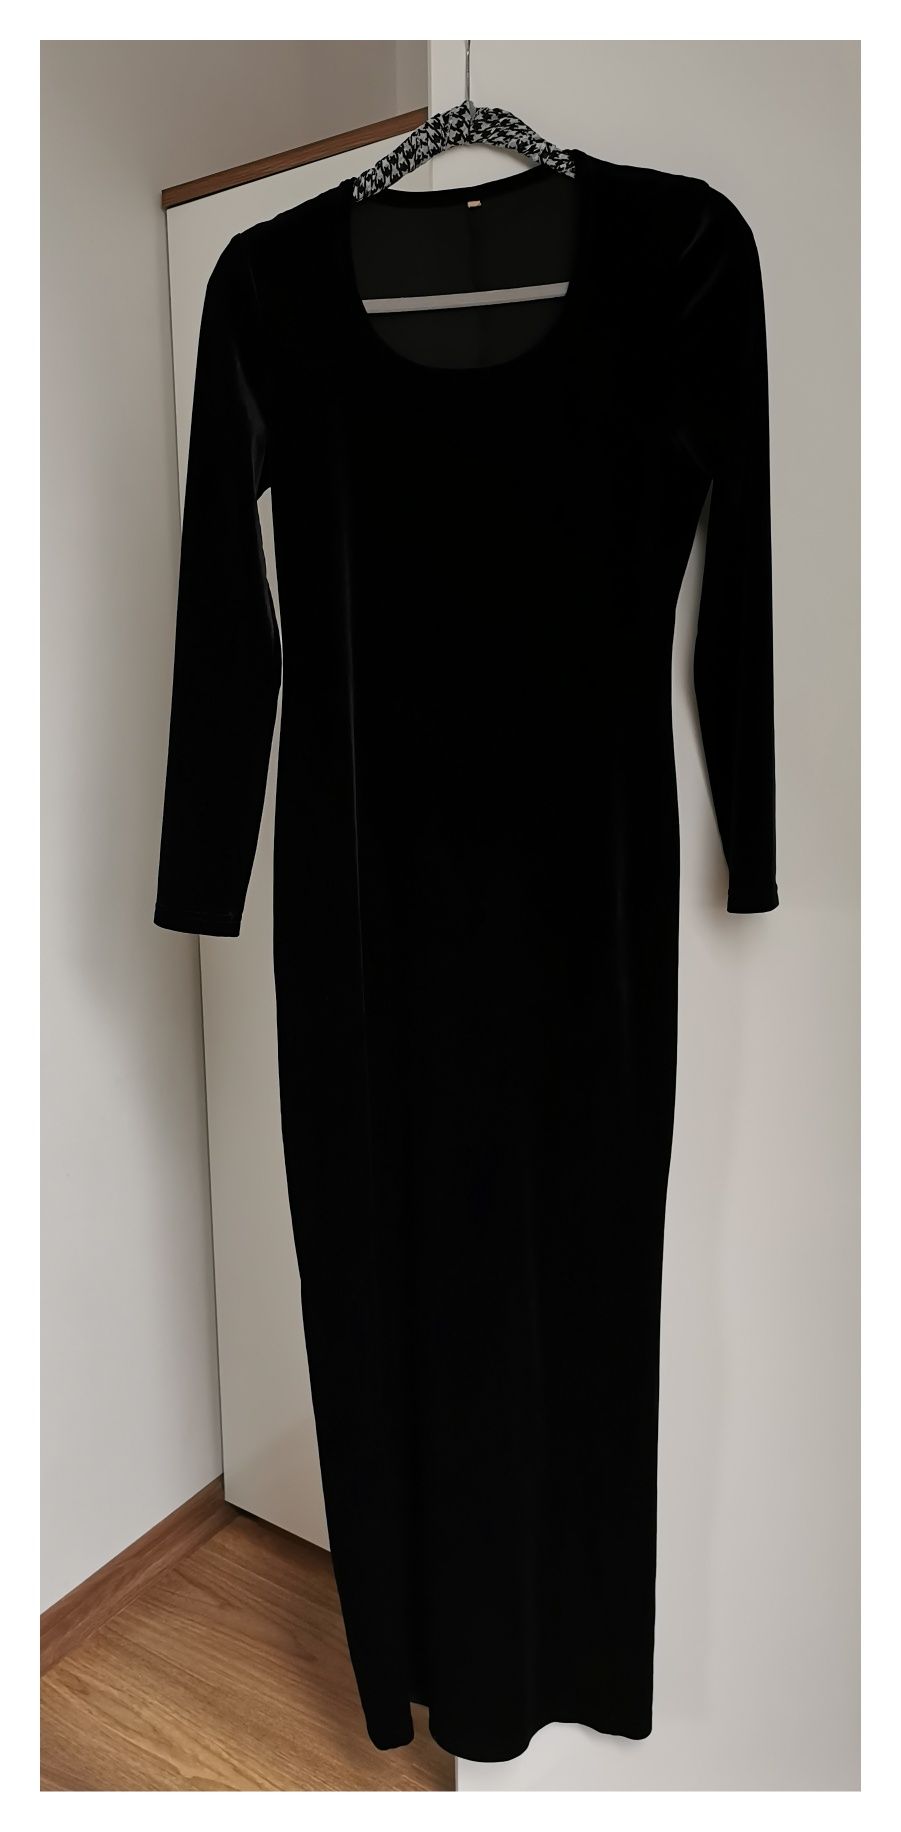 Czarna welurowa suknia (M/L) #welurowa #wieczorowa sylwestrowa